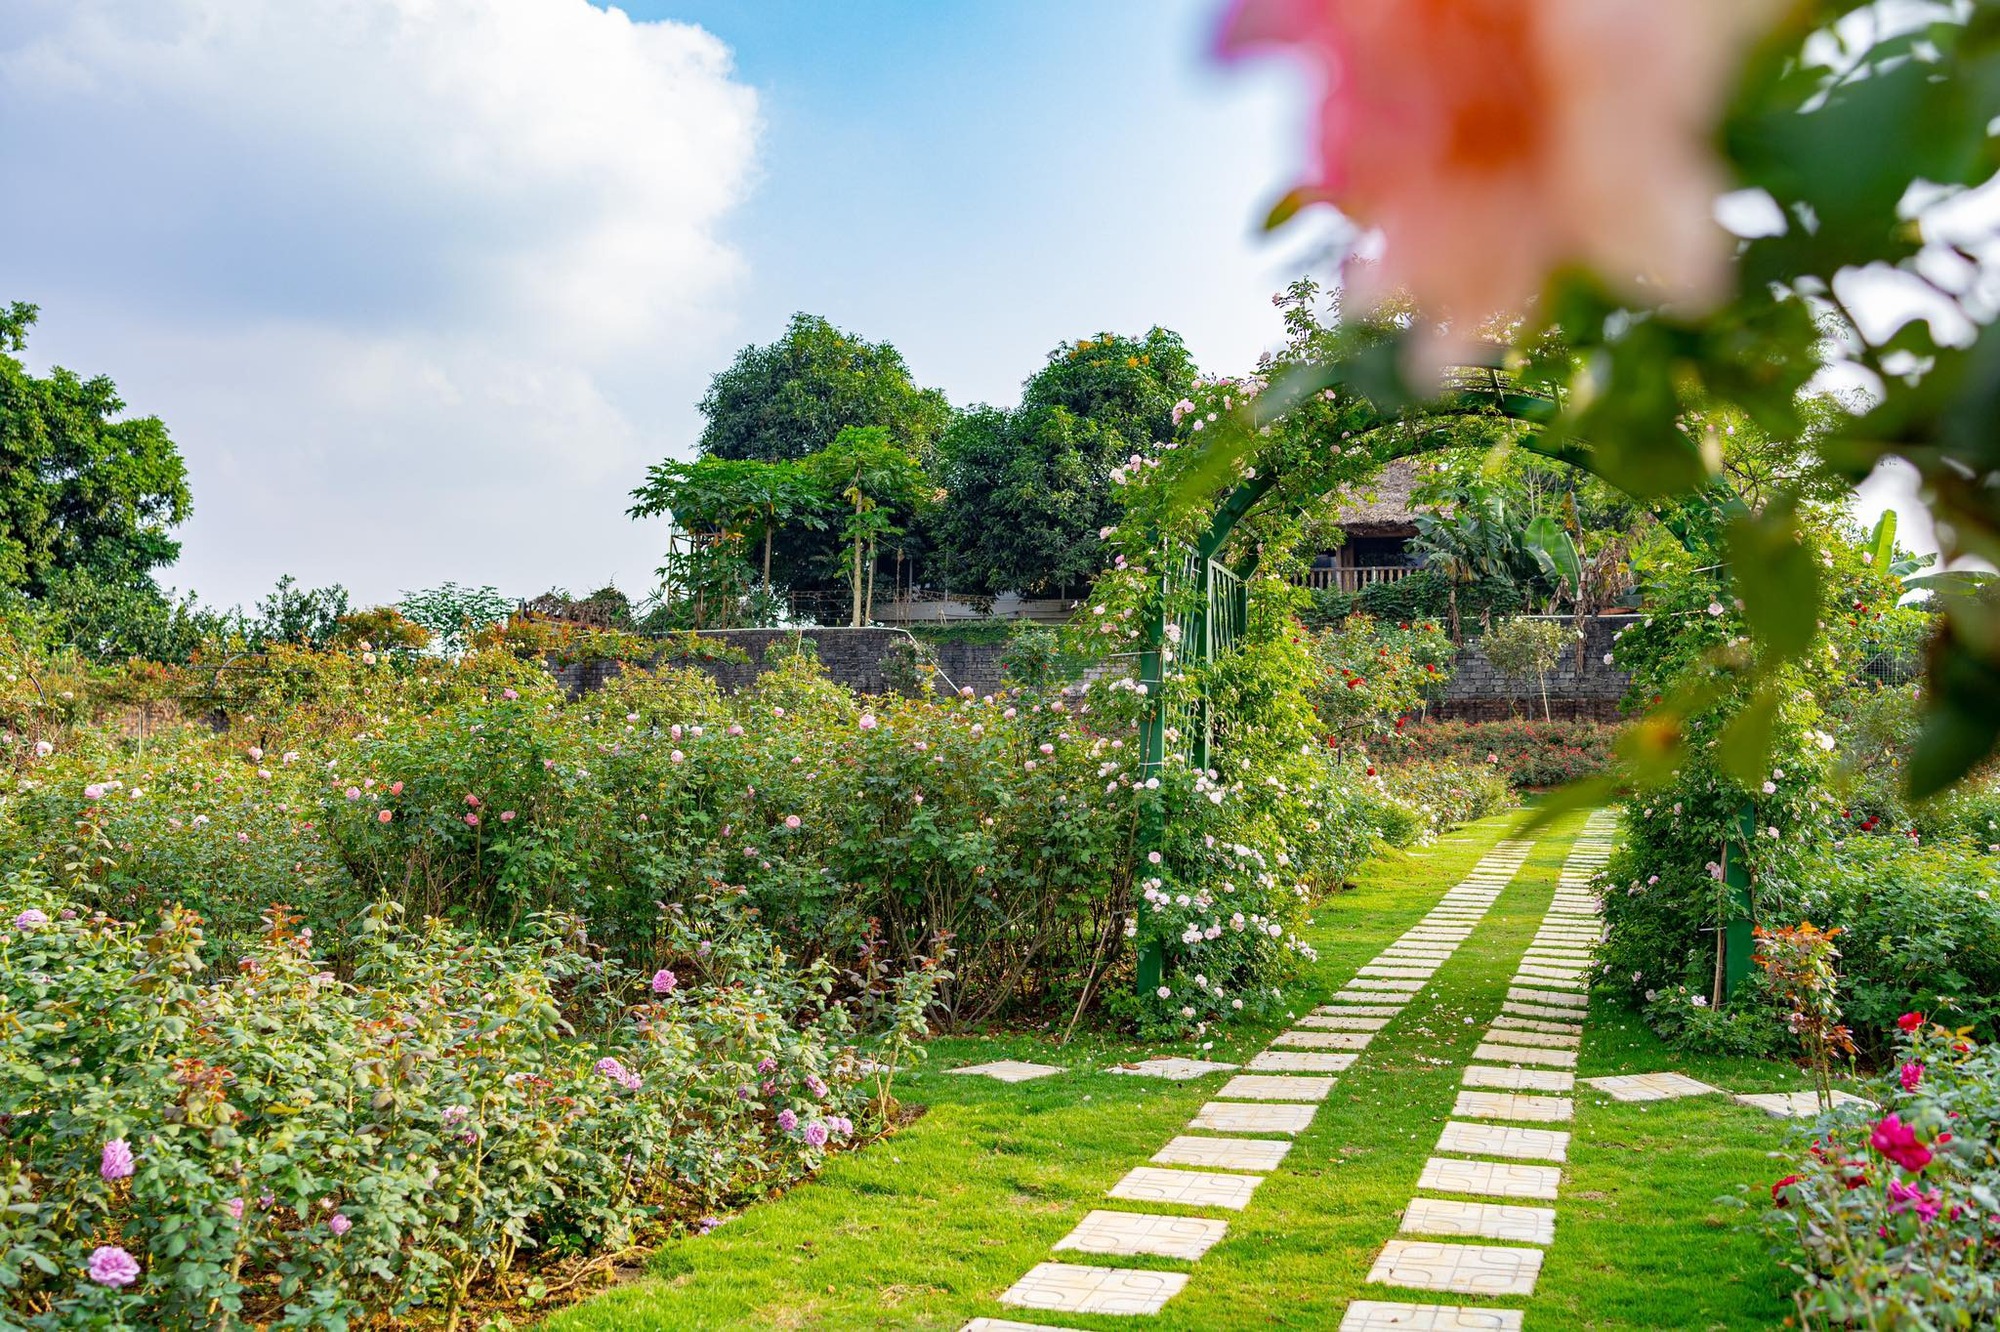 Mùng 3 Tết đến thăm vườn hồng rộng 6.000m² của người phụ nữ Hà Nội - Ảnh 7.